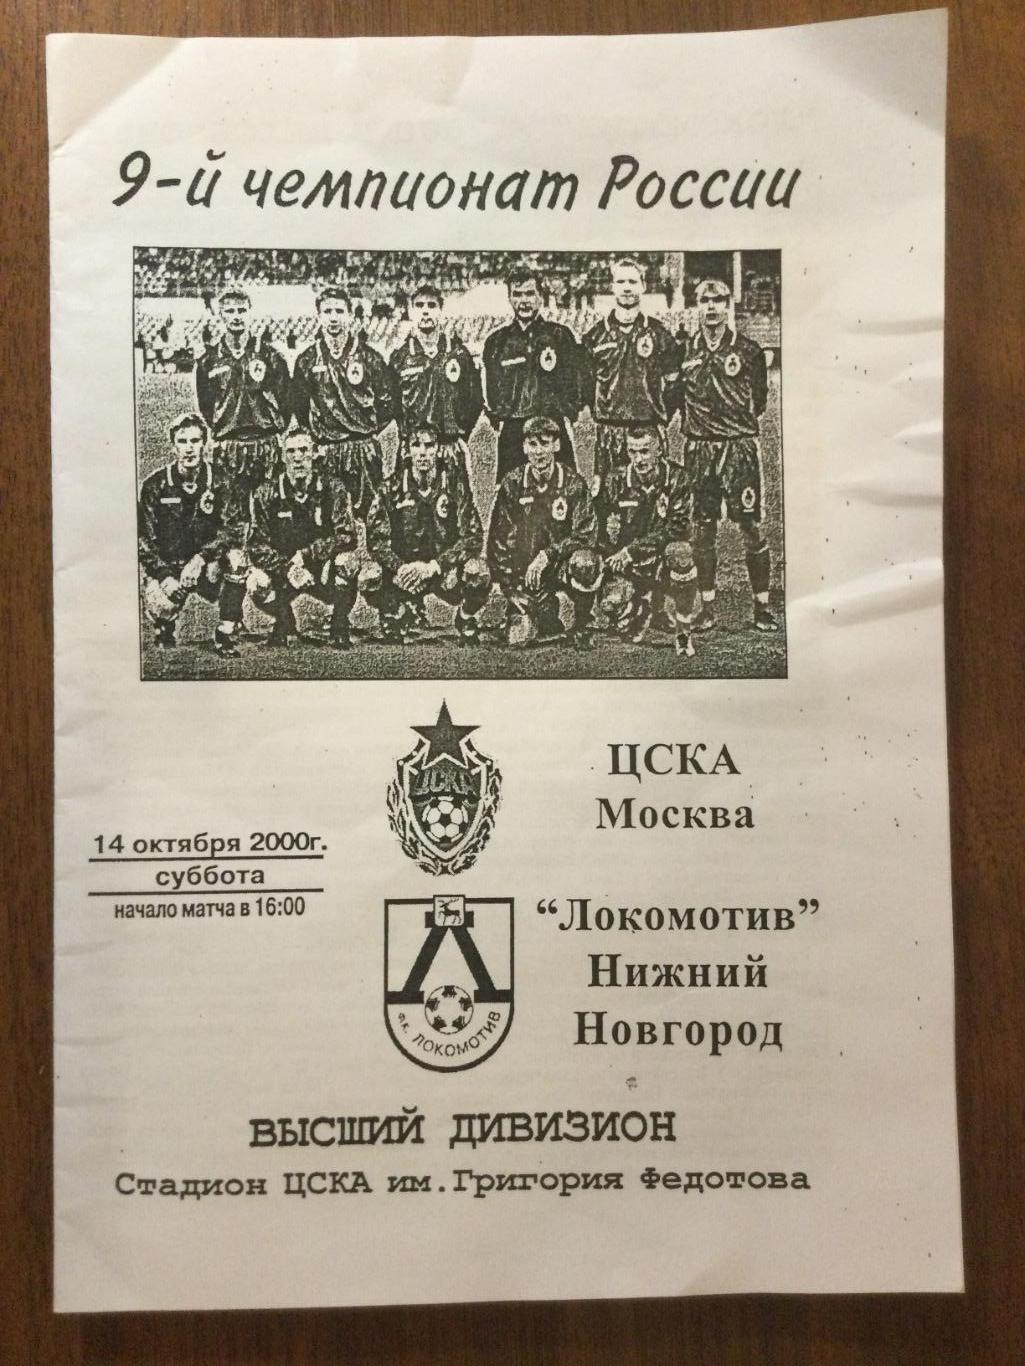 ЦСКА - Локомотив (Нижний Новгород) - 2000 неофициальная